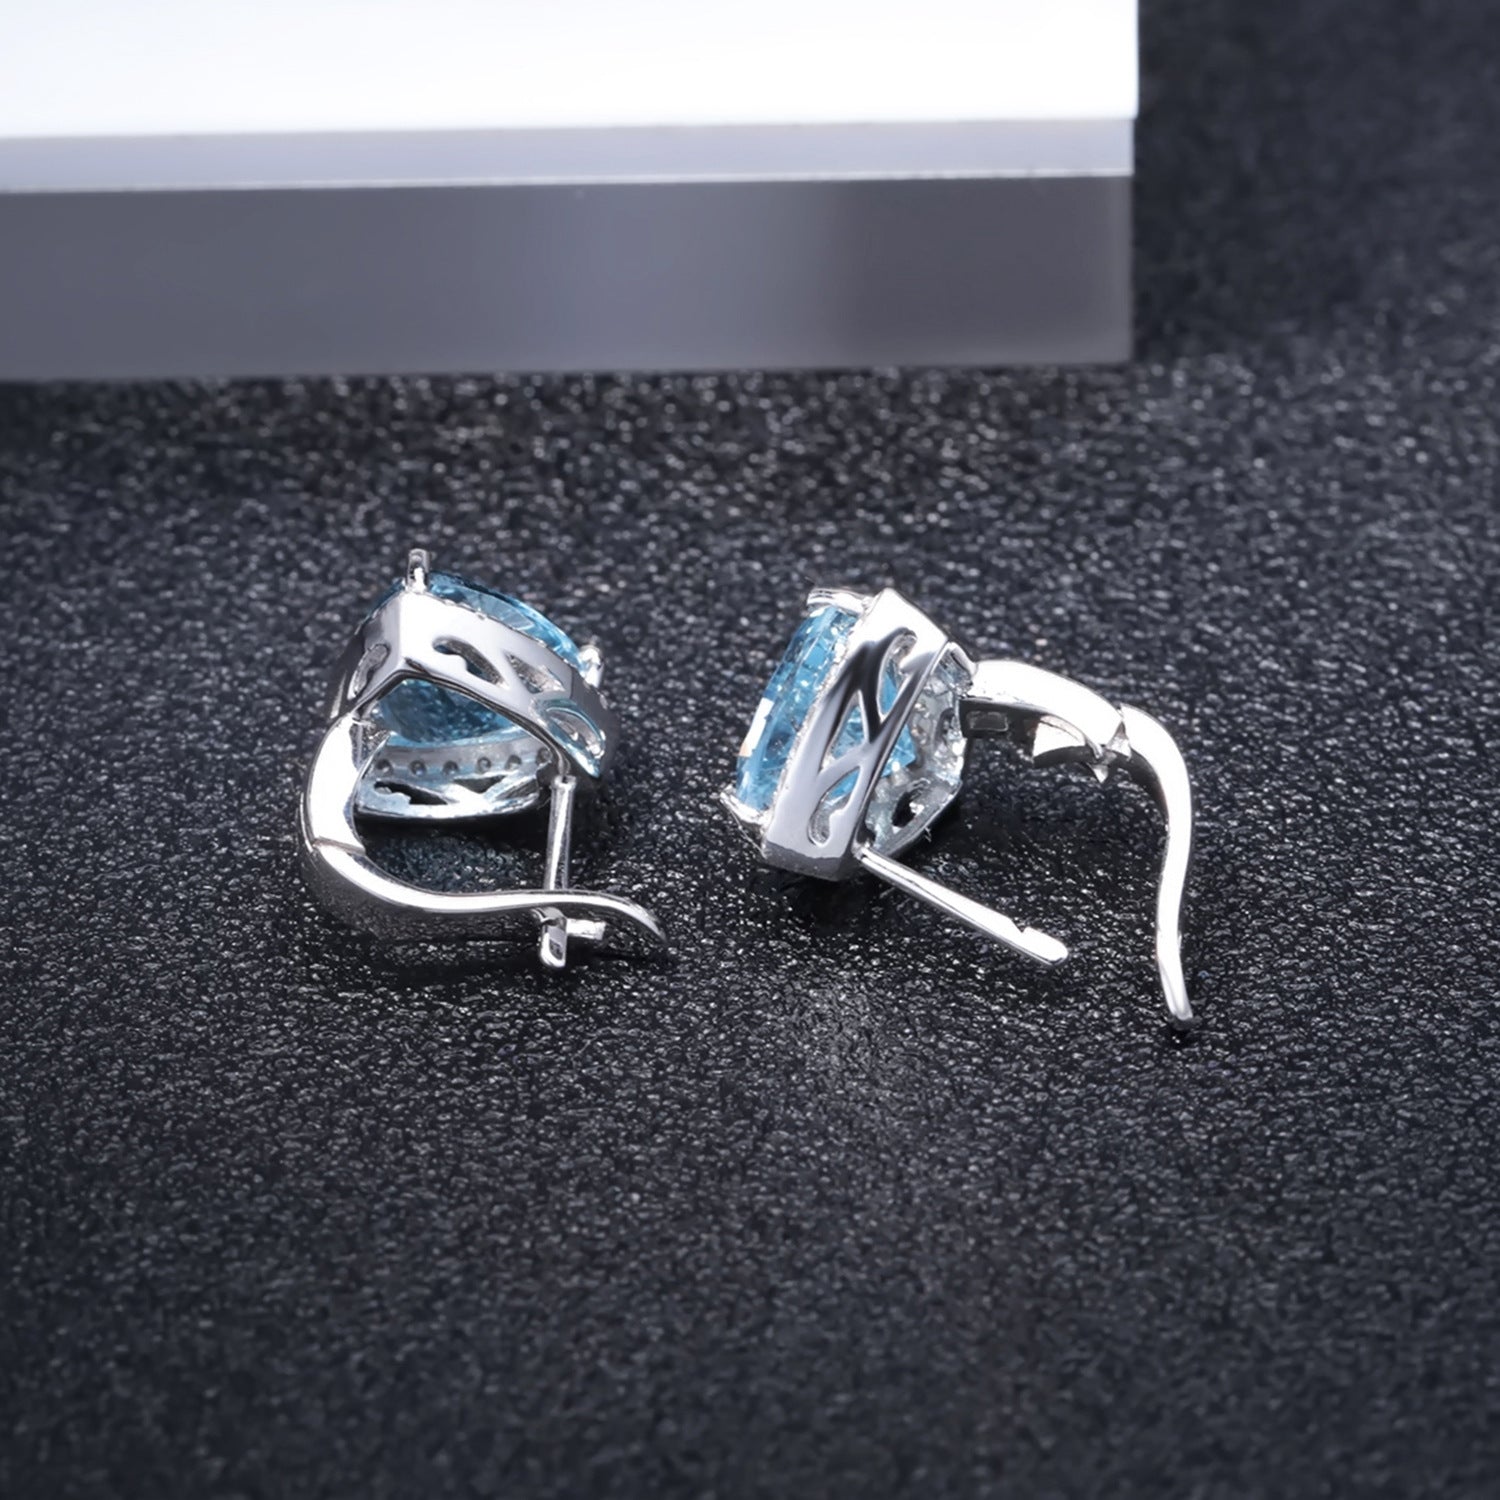 Blue Topaz Stud Earrings Sterling Silver - HERS